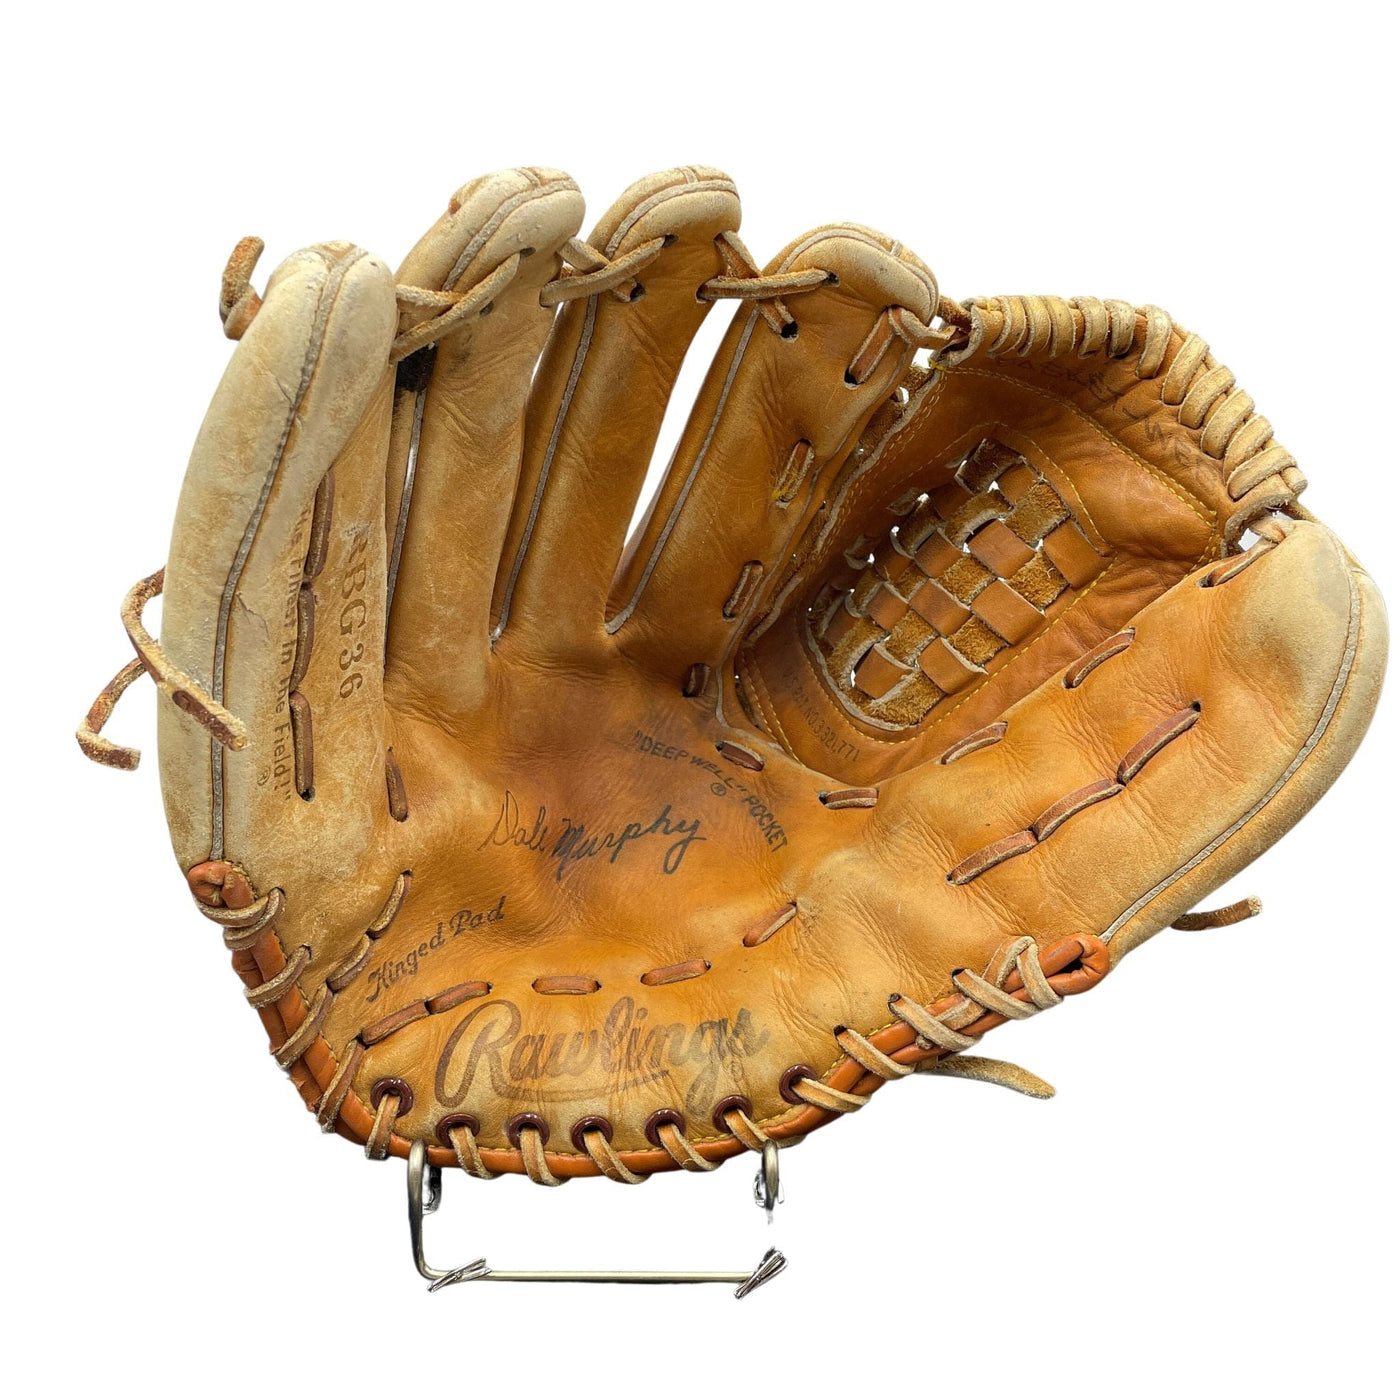 Dale Murphy Baseball Glove - G007